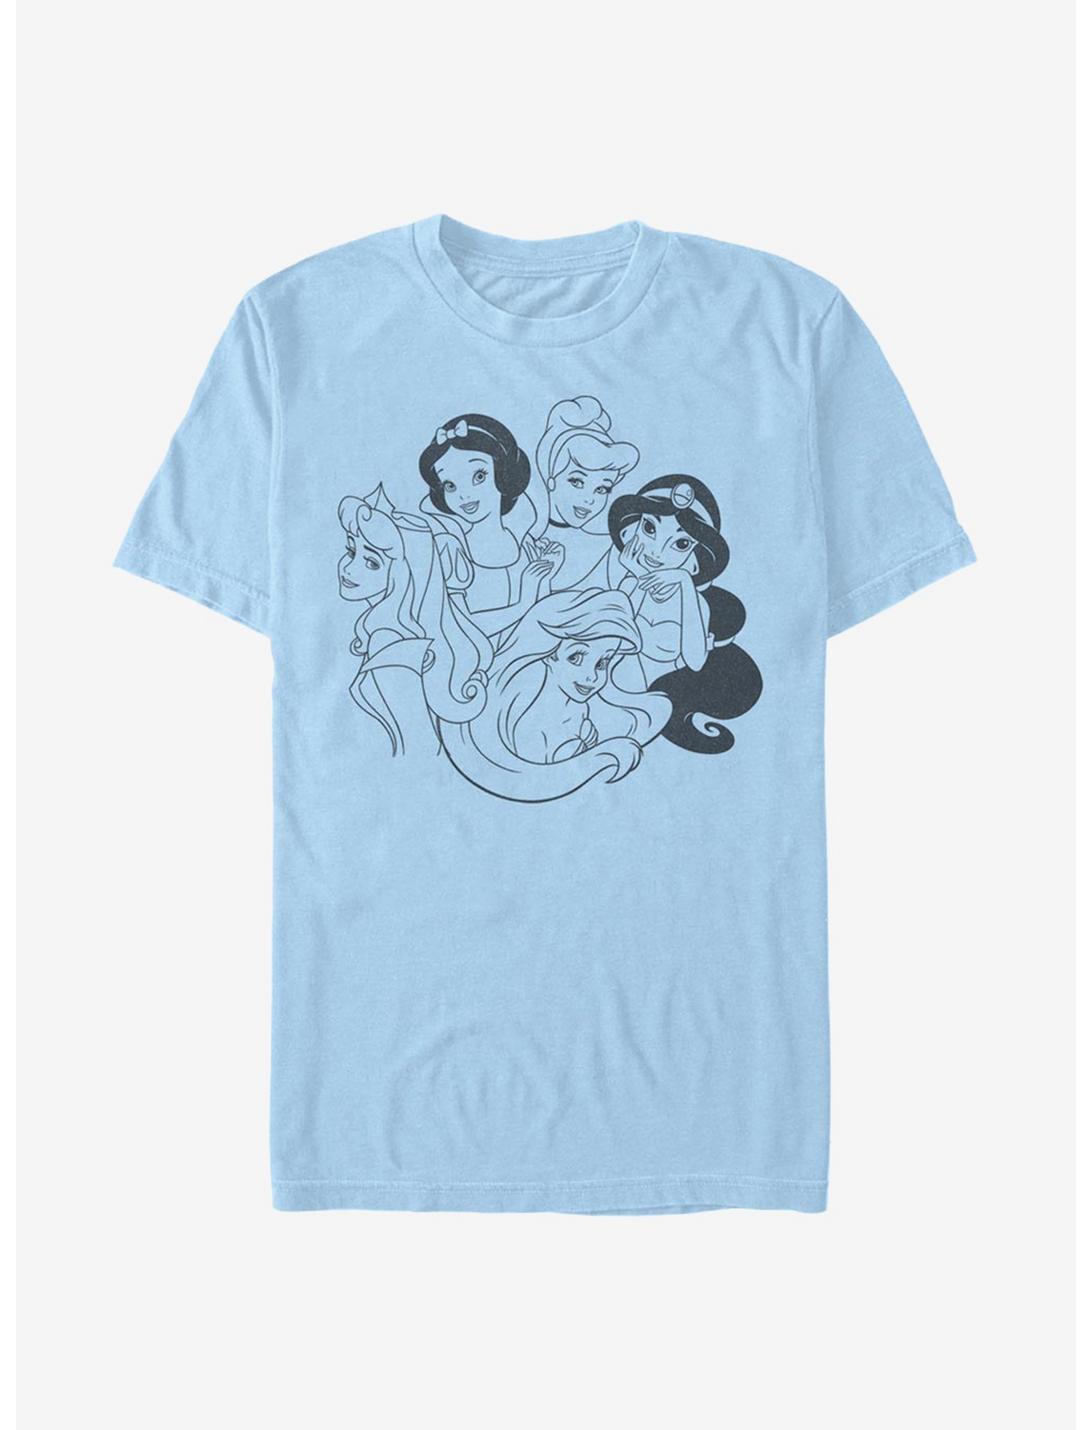 Disney Princesses Simple Princess T-Shirt, LT BLUE, hi-res